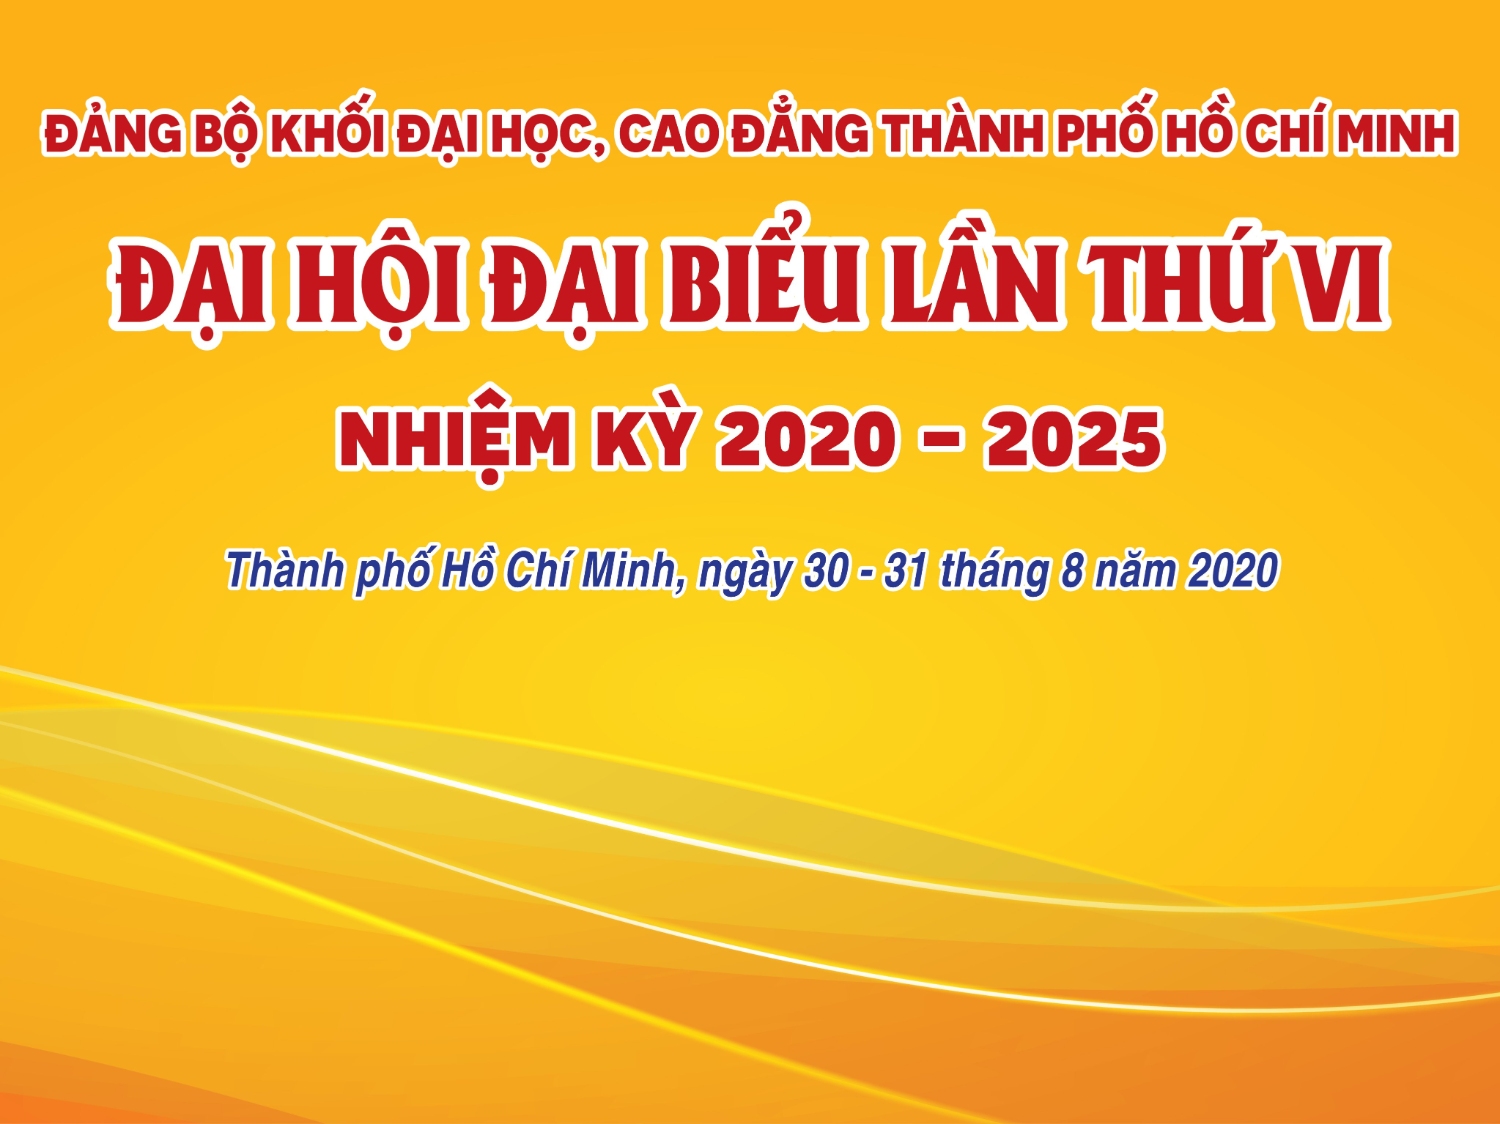 Trực tiếp phiên khai mạc Đại hội Đại biểu Đảng bộ Khối Đại học, Cao đẳng Thành phố Hồ Chí Minh lần thứ VI, nhiệm kỳ 2020 - 2025